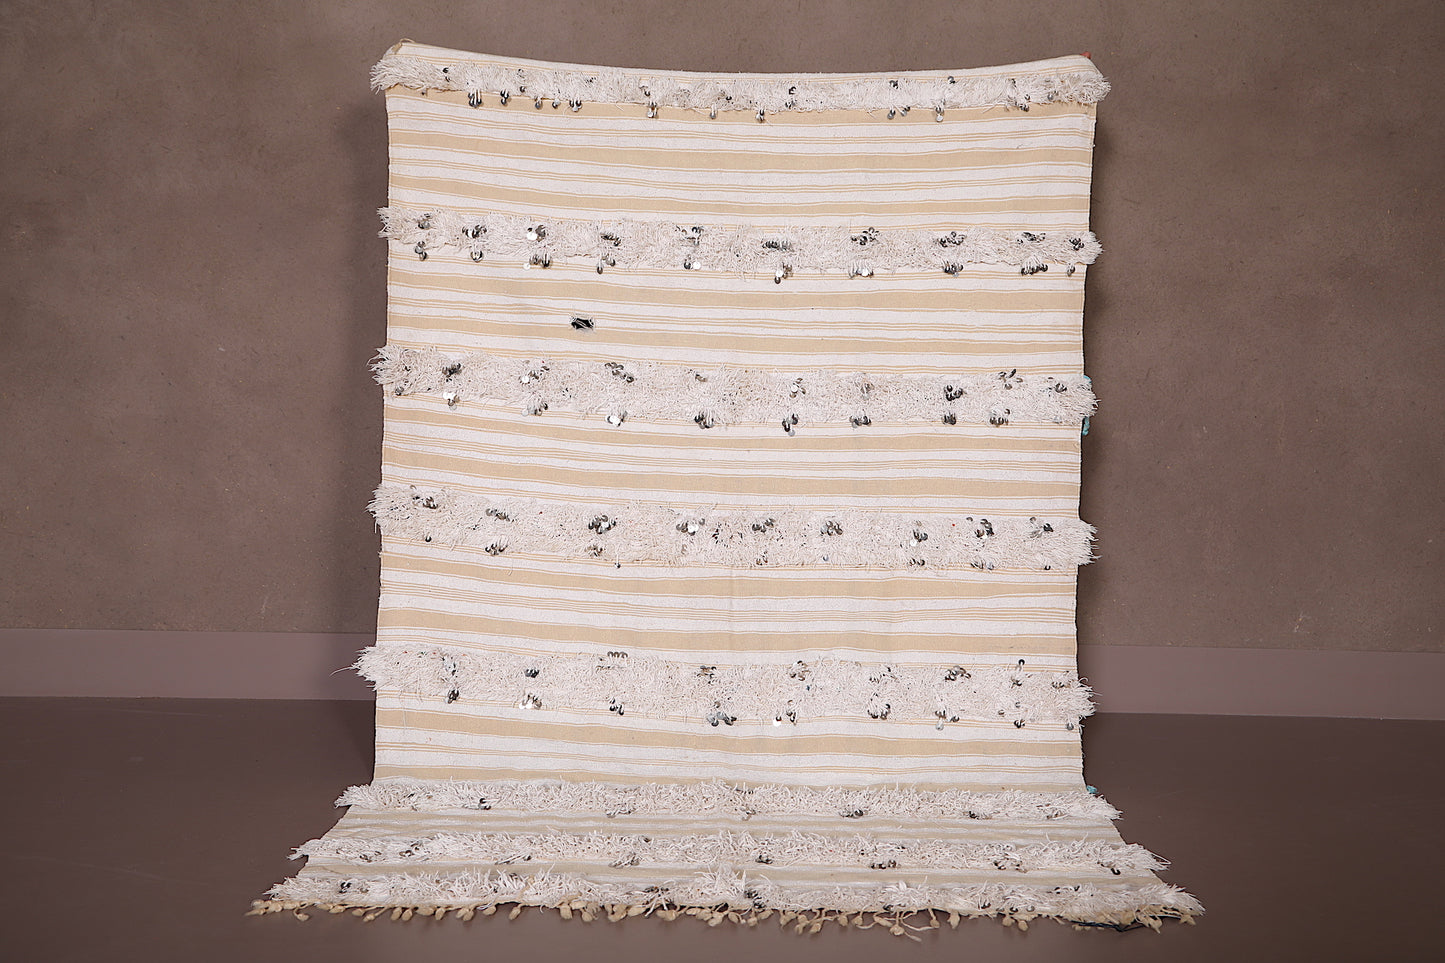 Berber Wedding Blanket Rug 3.7 FT X 5.5 FT